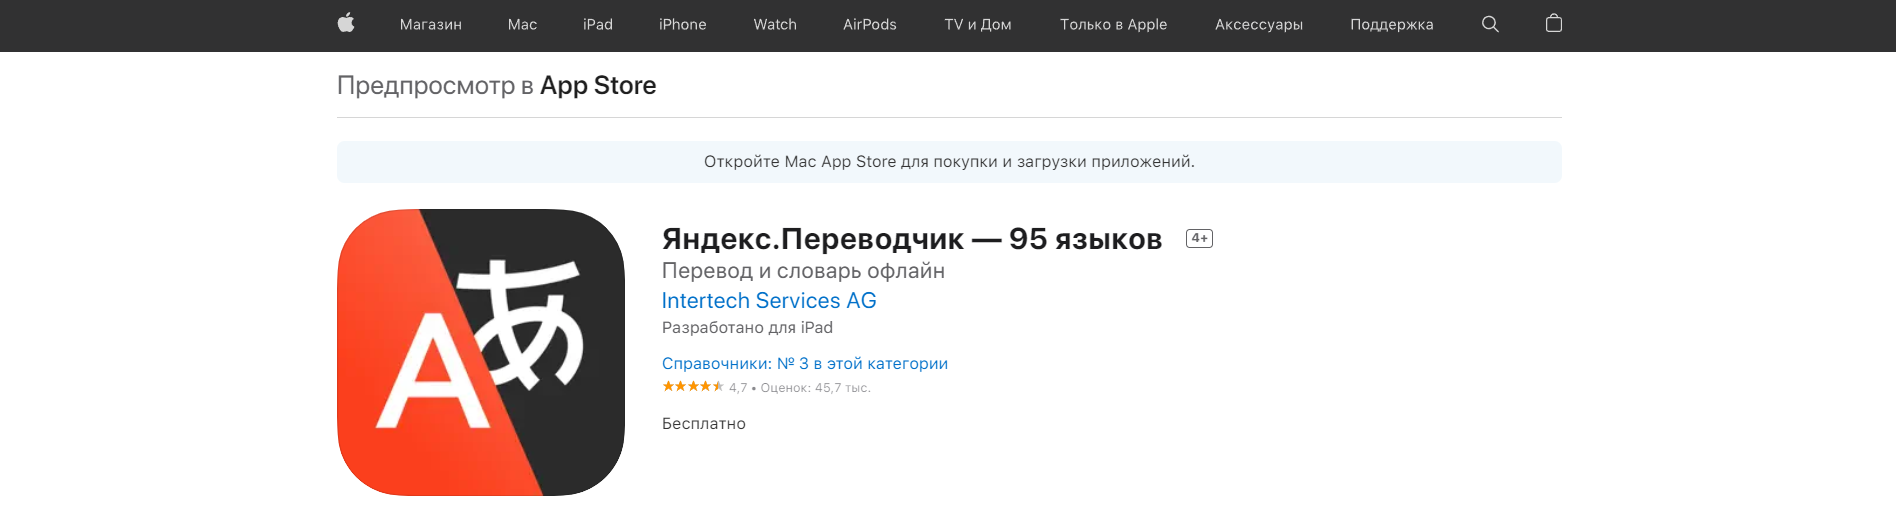 Скачать Яндекс переводчик для iOS c App Store